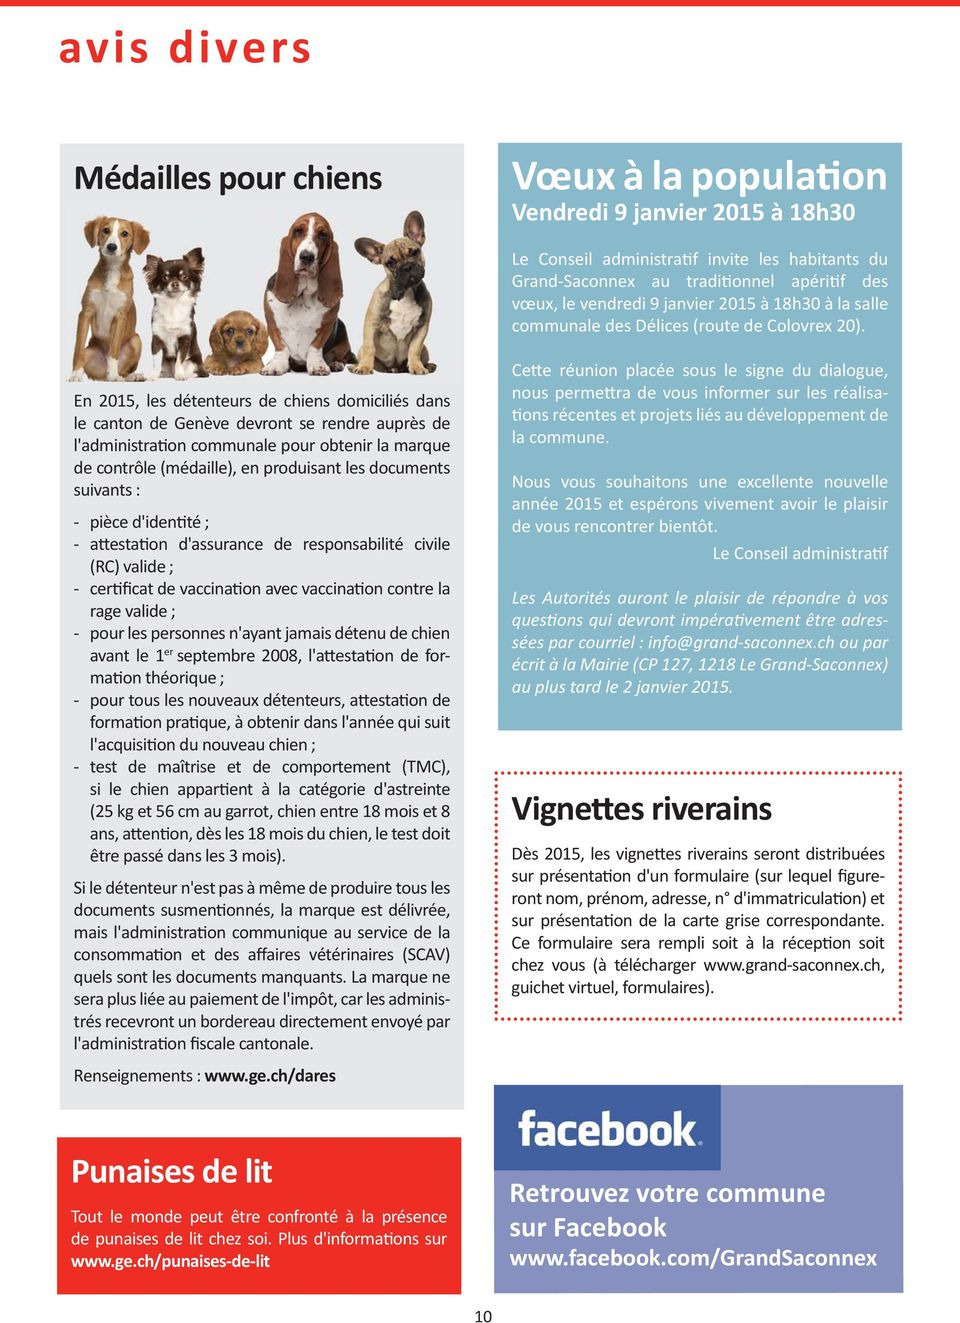 En 2015, les détenteurs de chiens domiciliés dans le canton de Genève devront se rendre auprès de l'administra on communale pour obtenir la marque de contrôle (médaille), en produisant les documents